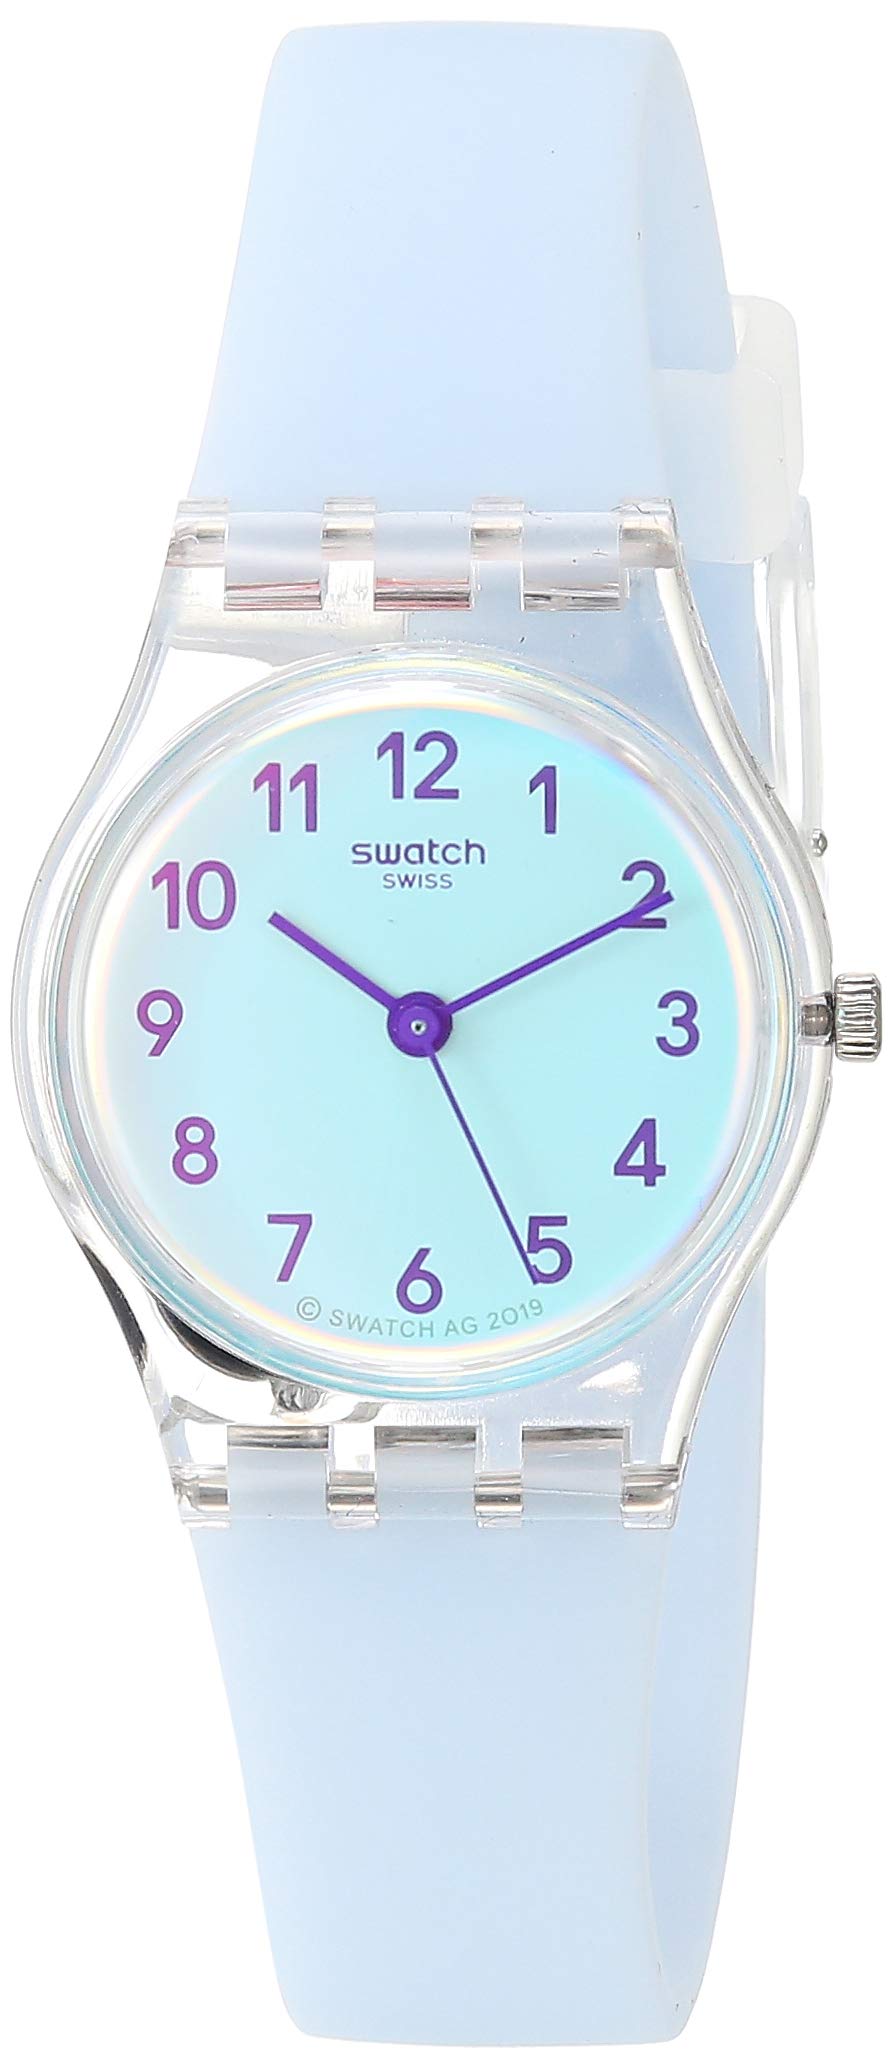 Swatch CASUAL BLUE Unisex Watch (Model: LK396)